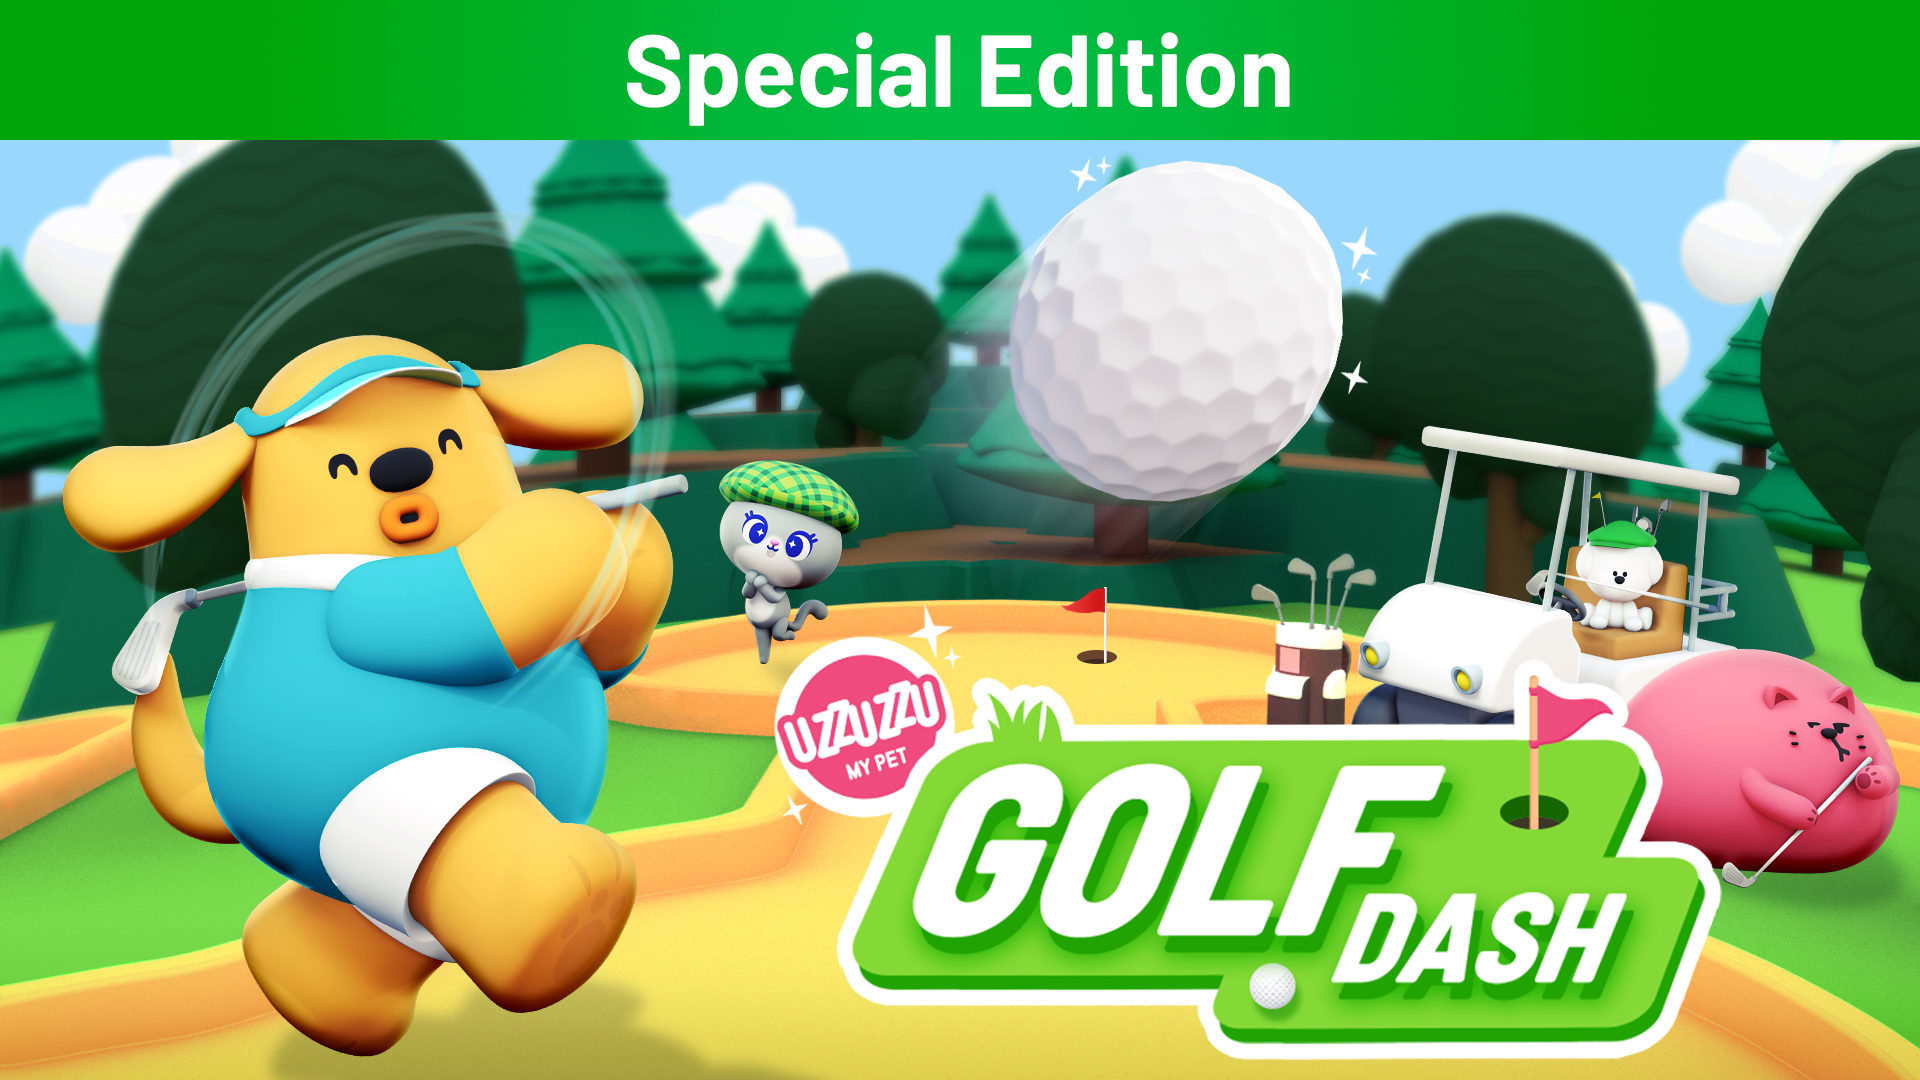 Uzzuzzu My Pet - Golf Dash Special Edition